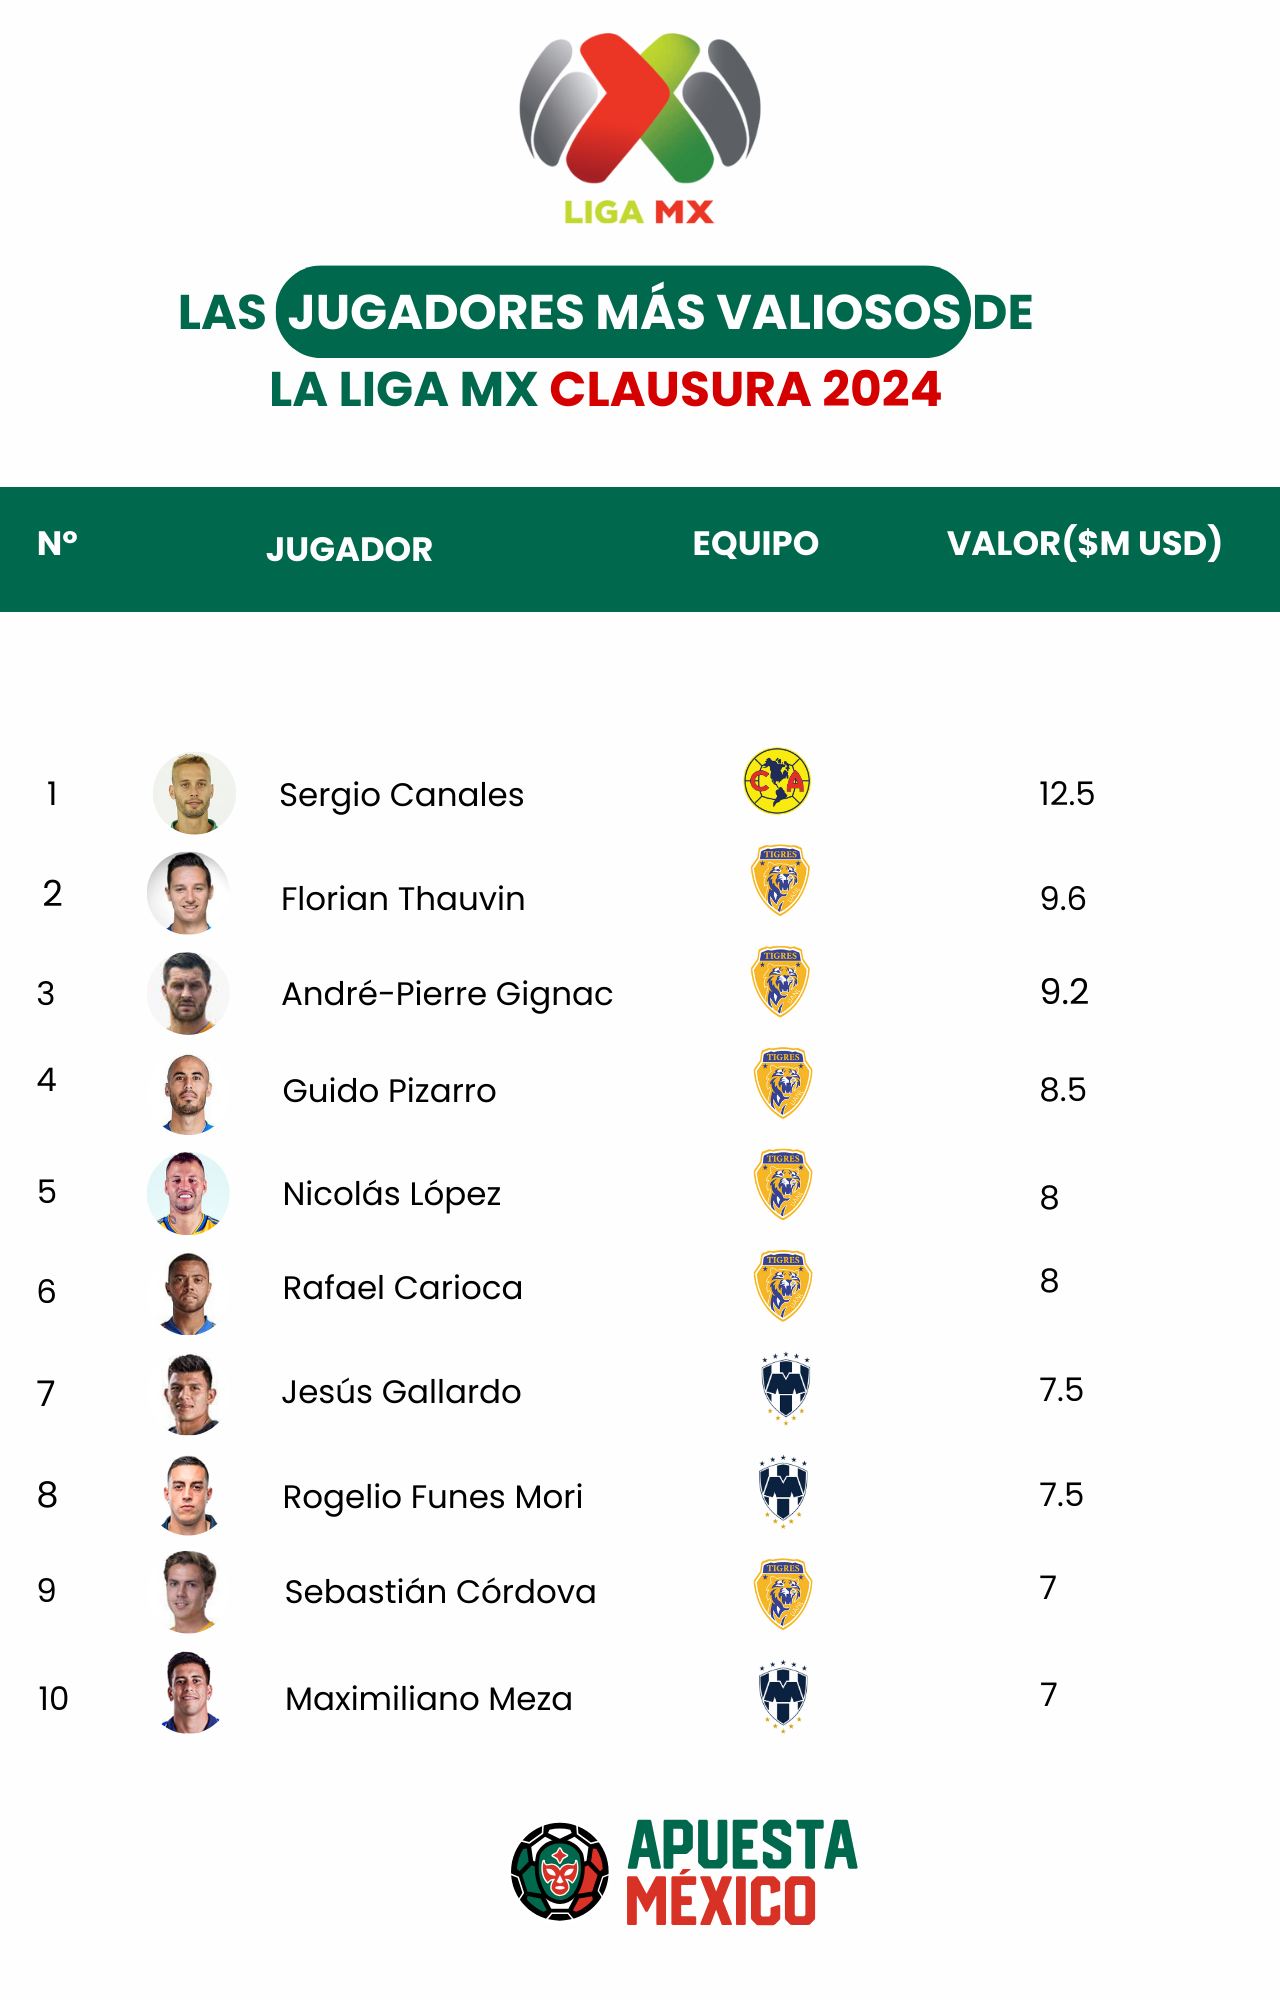 ApuestaMéxico: el valor de mercado de la La Liga MX ha crecido un 4,5% en la temporada 2023-2024